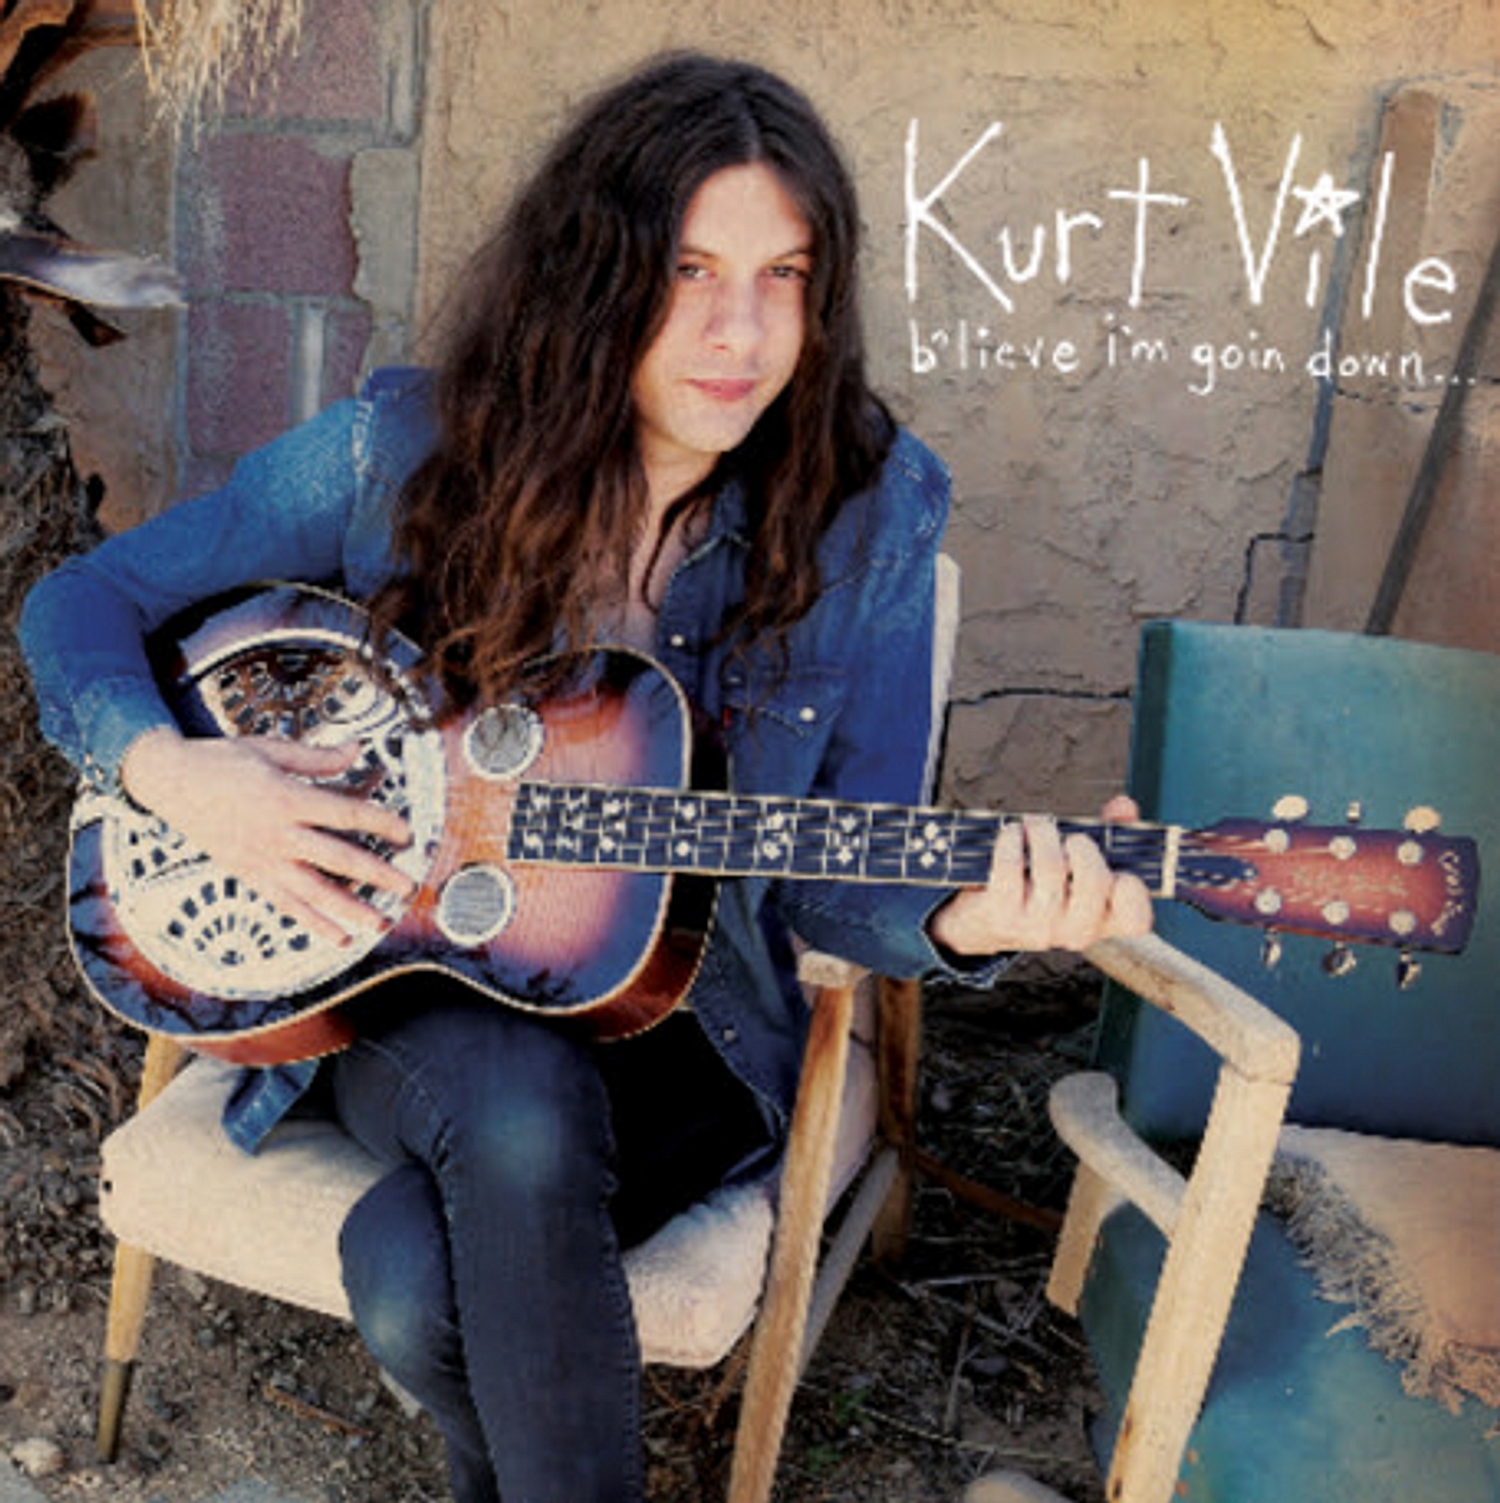 Kurt Vile confirms ‘b’lieve i’m goin down…’ album details